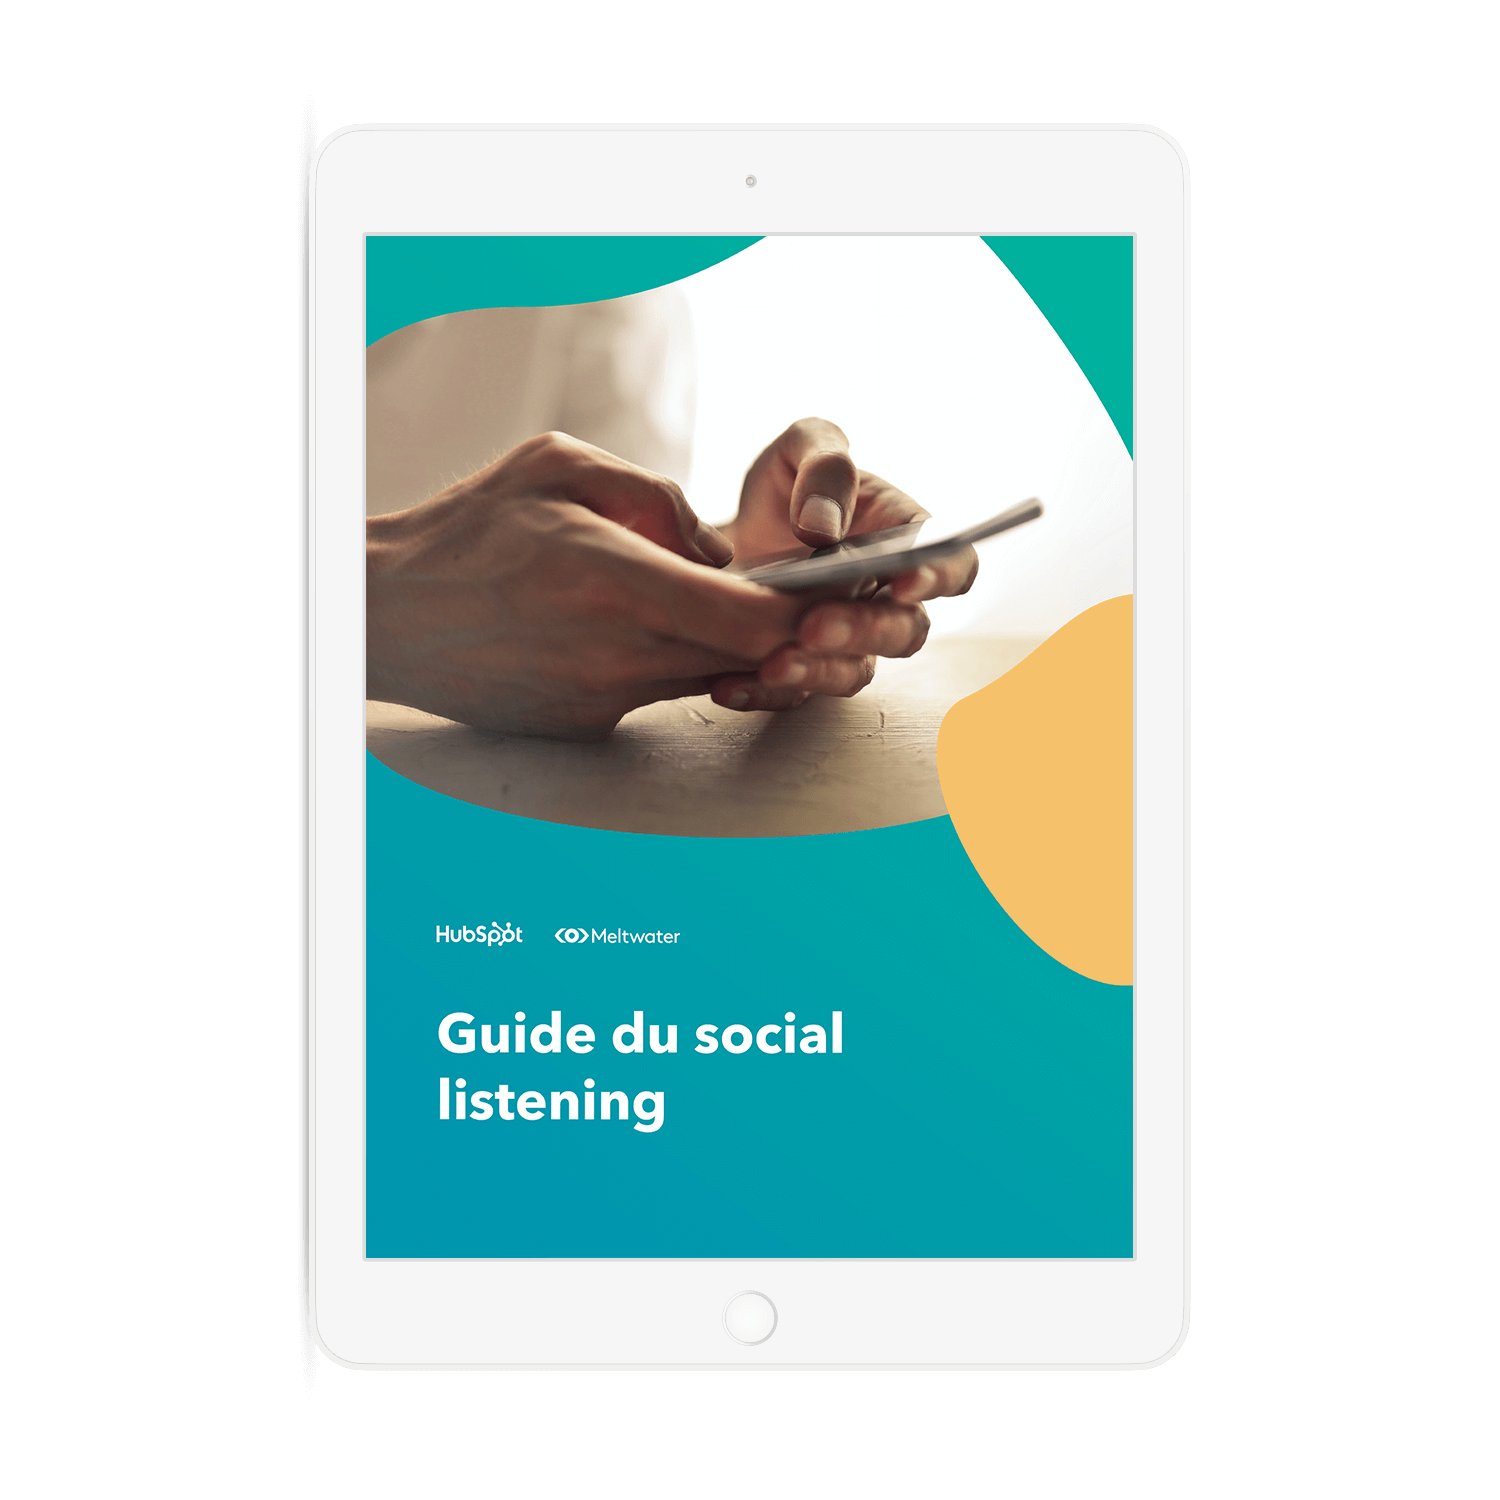 Guide du social listening